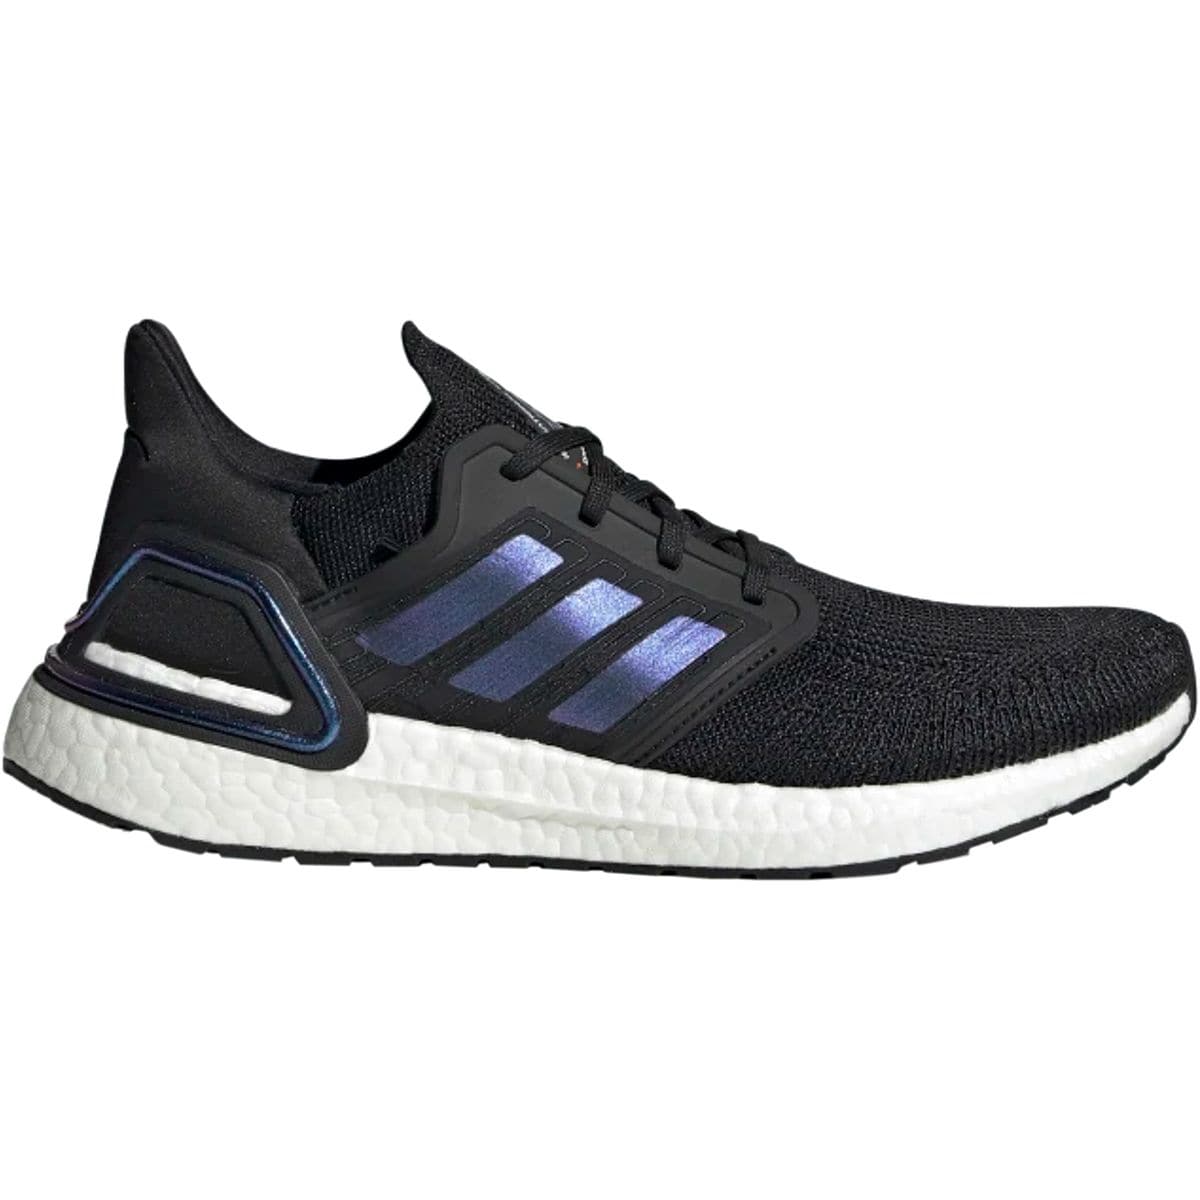 Adidas UltraBOOST 20 Shoe - Men's - Footwear